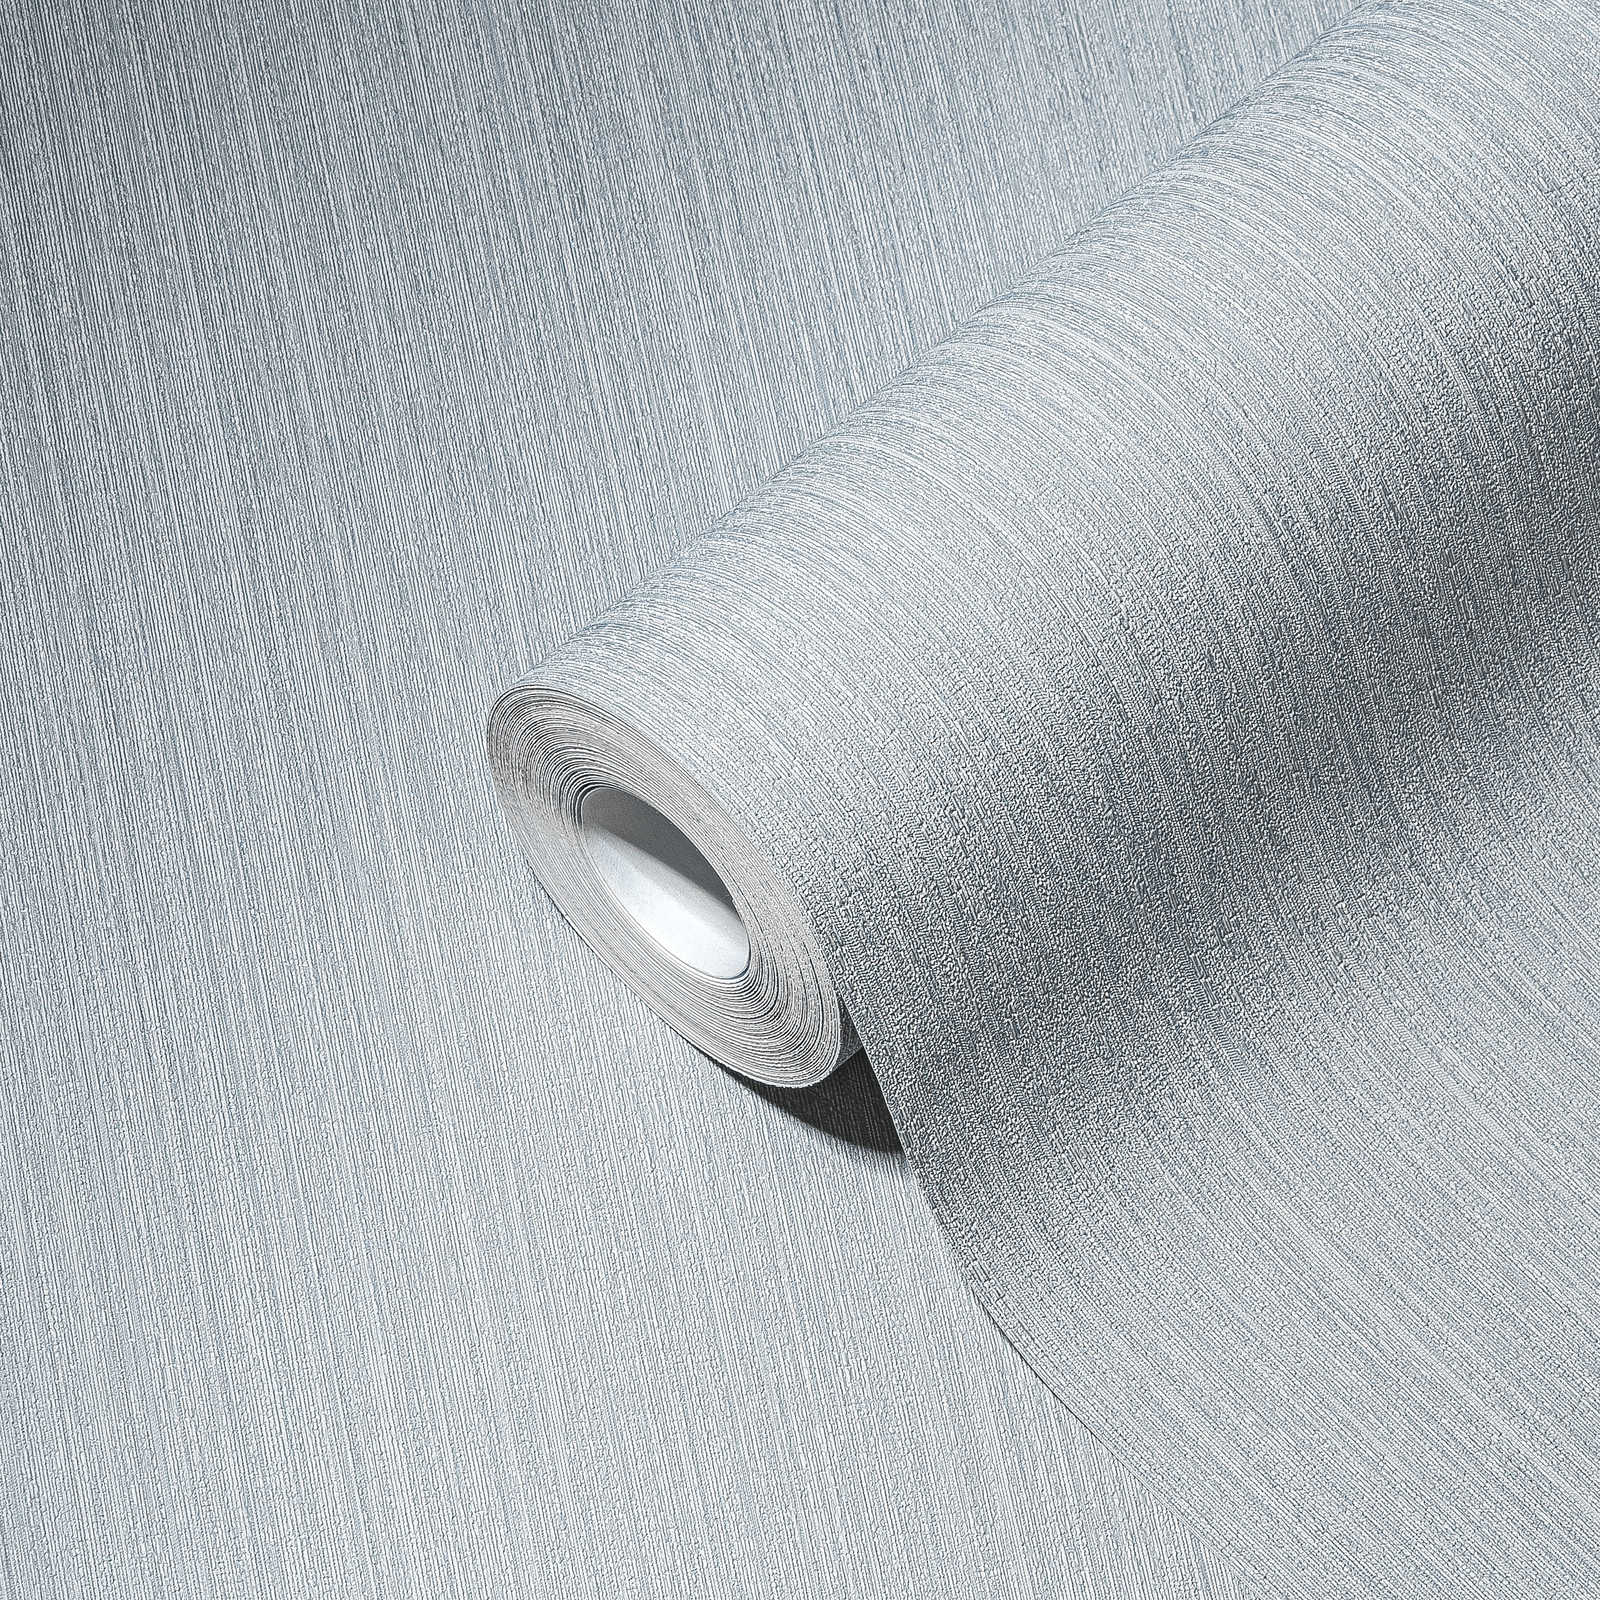             Non-woven wallpaper dove grey satin, plain with texture effect
        